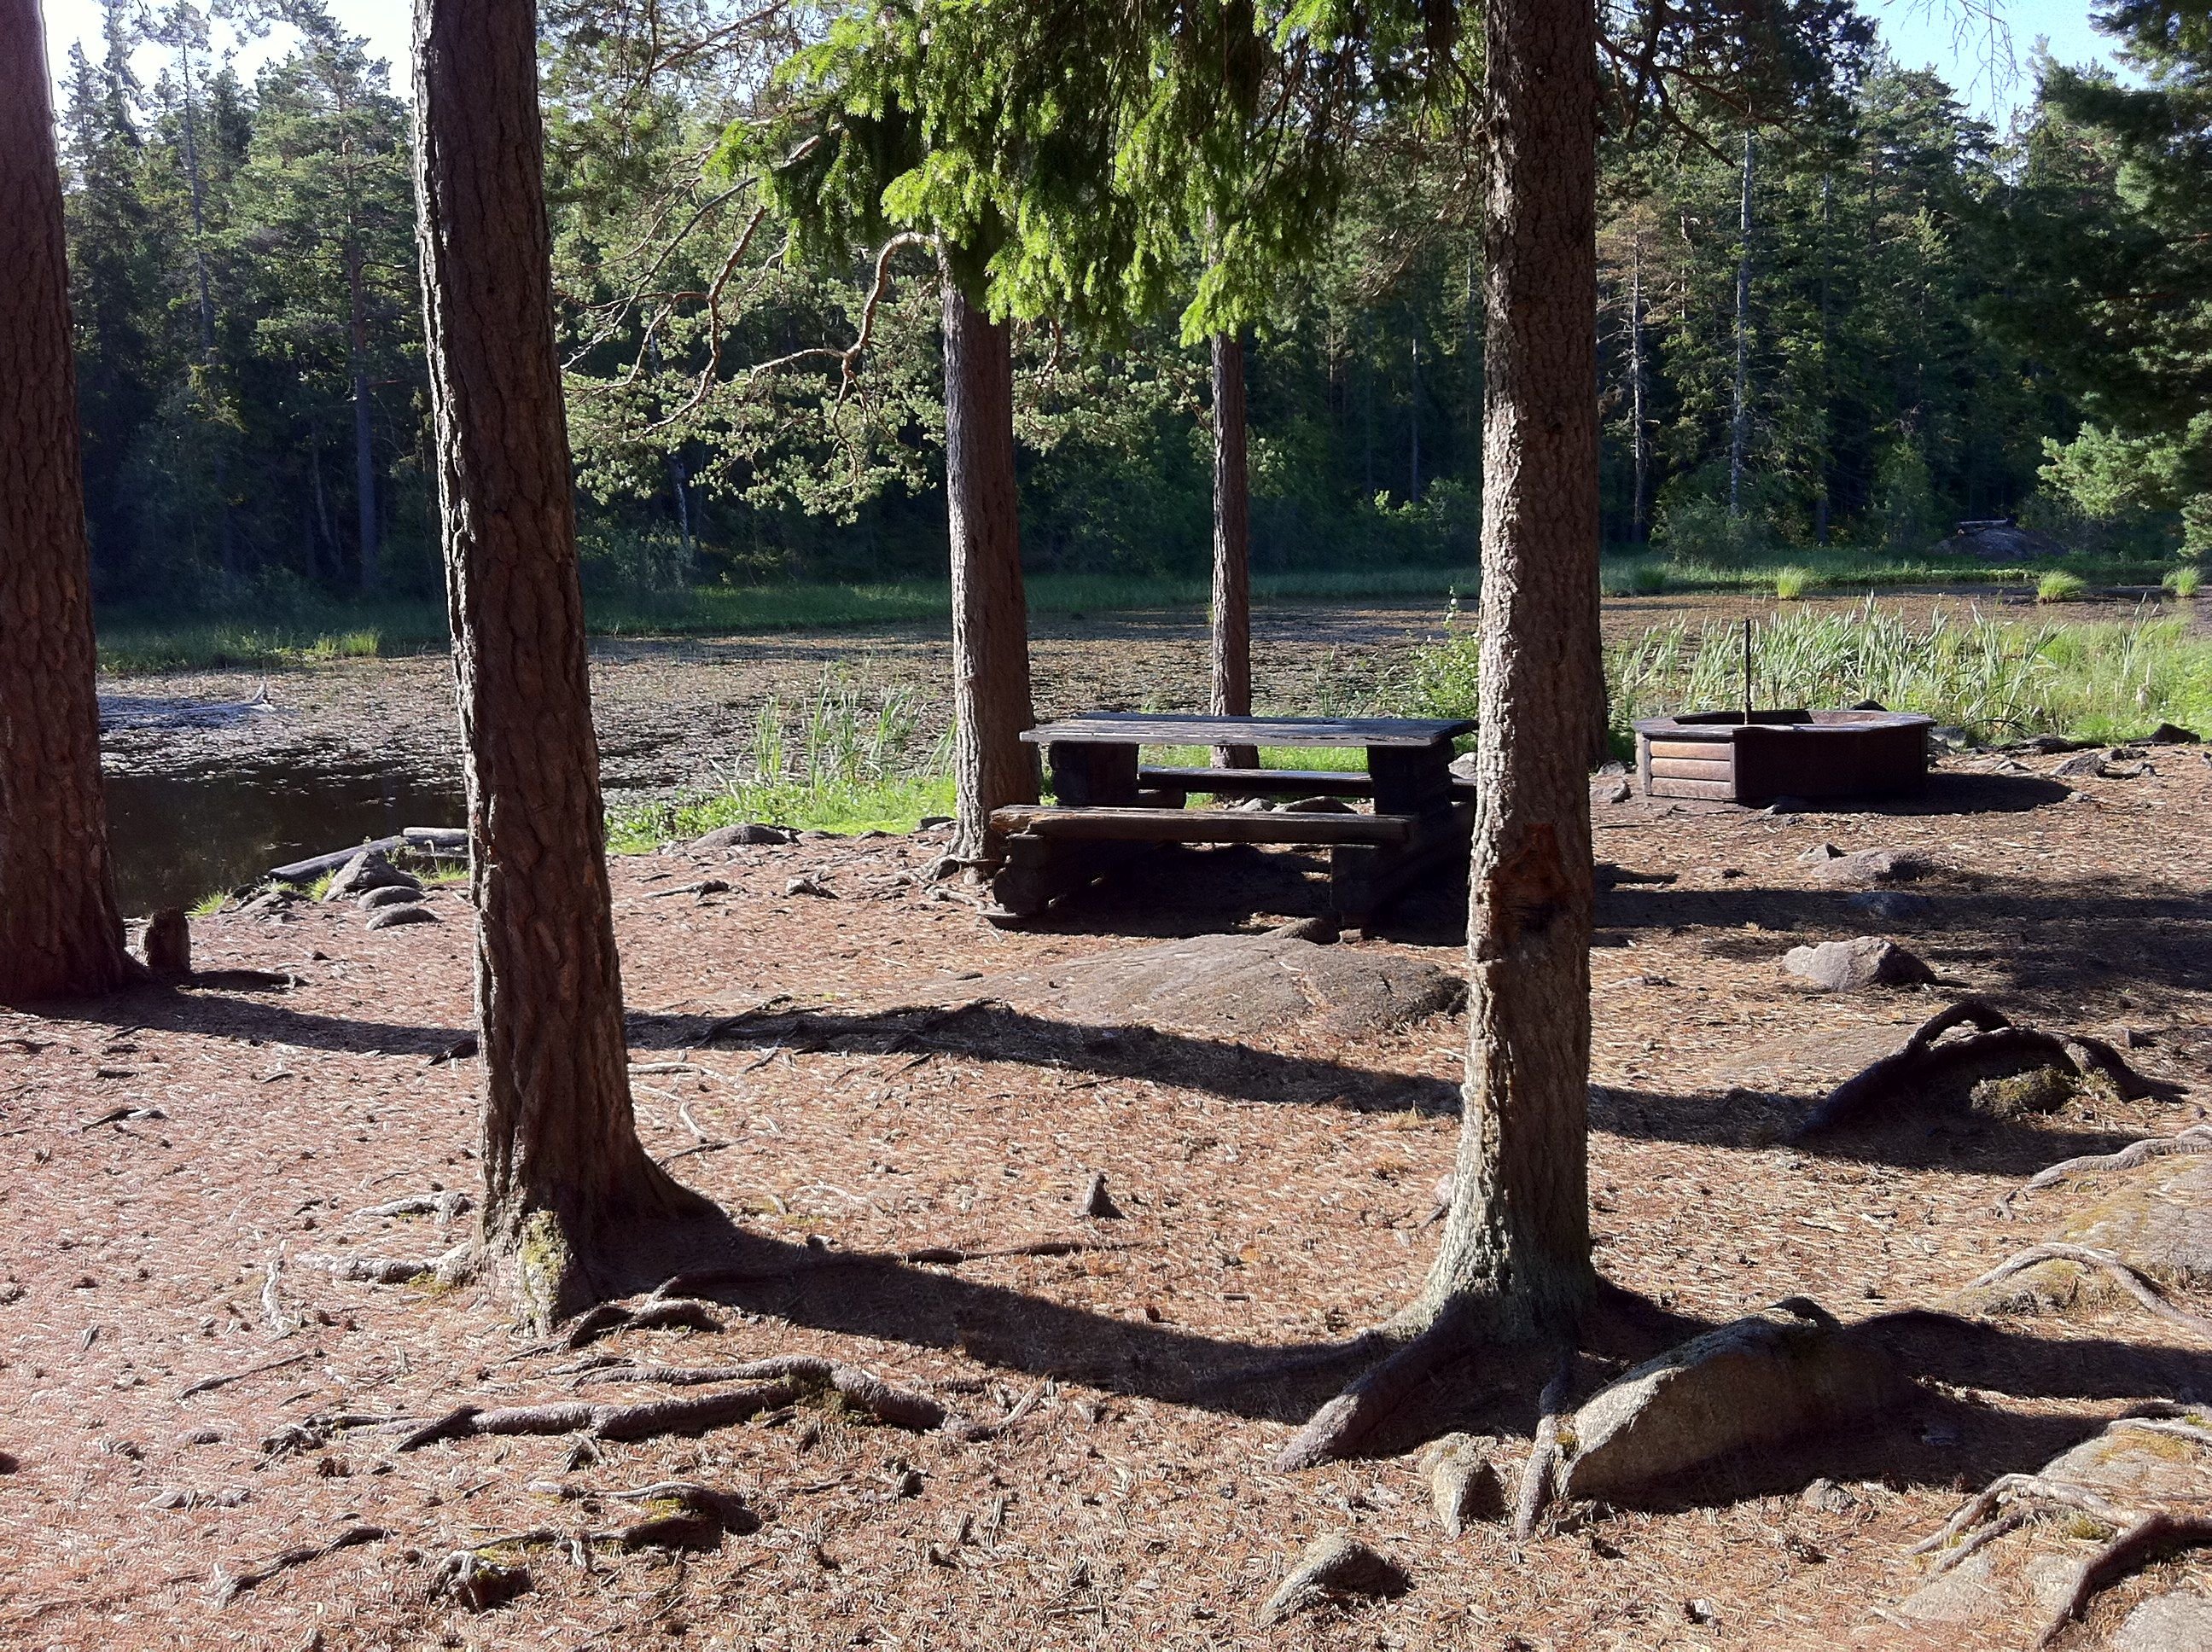 Vid en damm i skogen står ett bänkbord och en grillplats. Det växer flera träd på platsen.